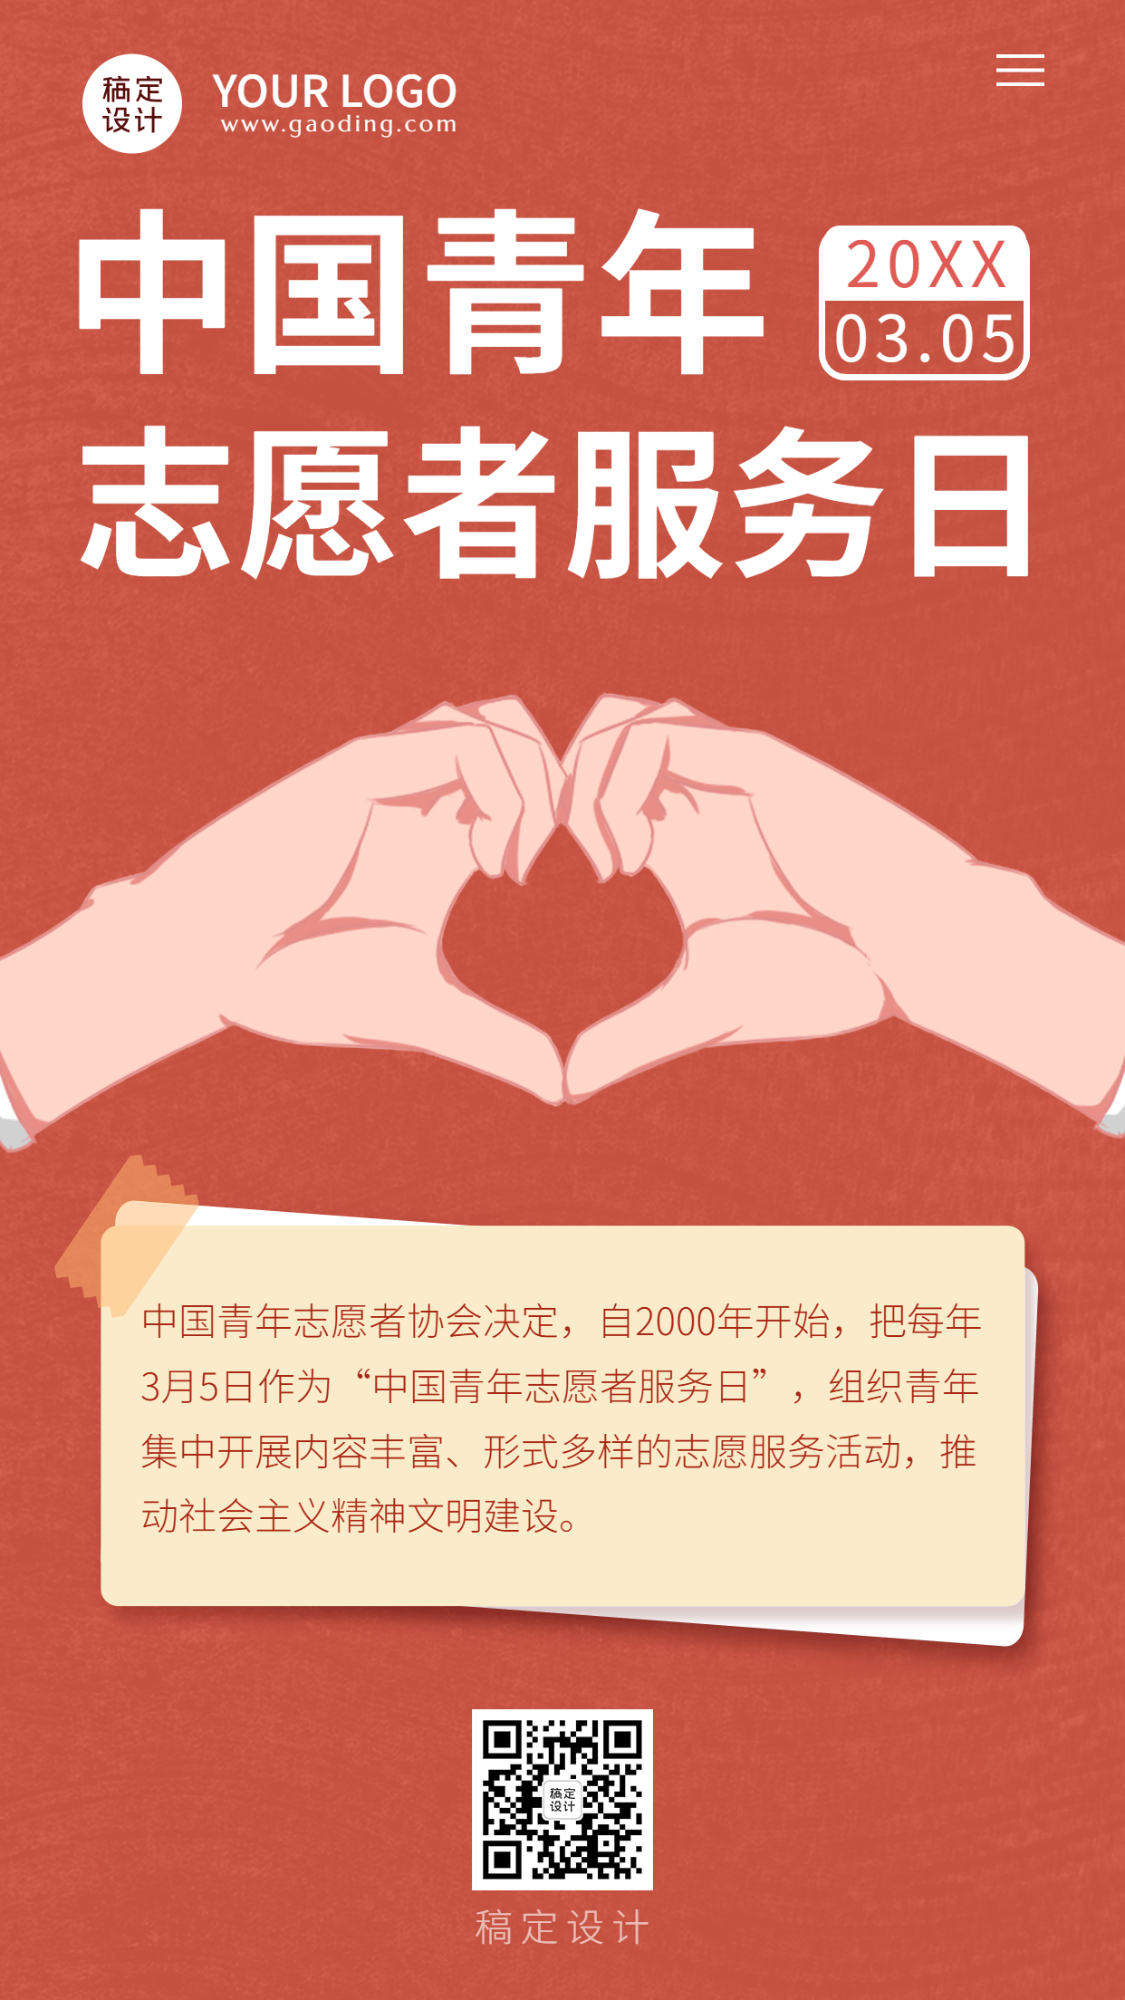 3.5中国青年志愿者服务日手机海报预览效果